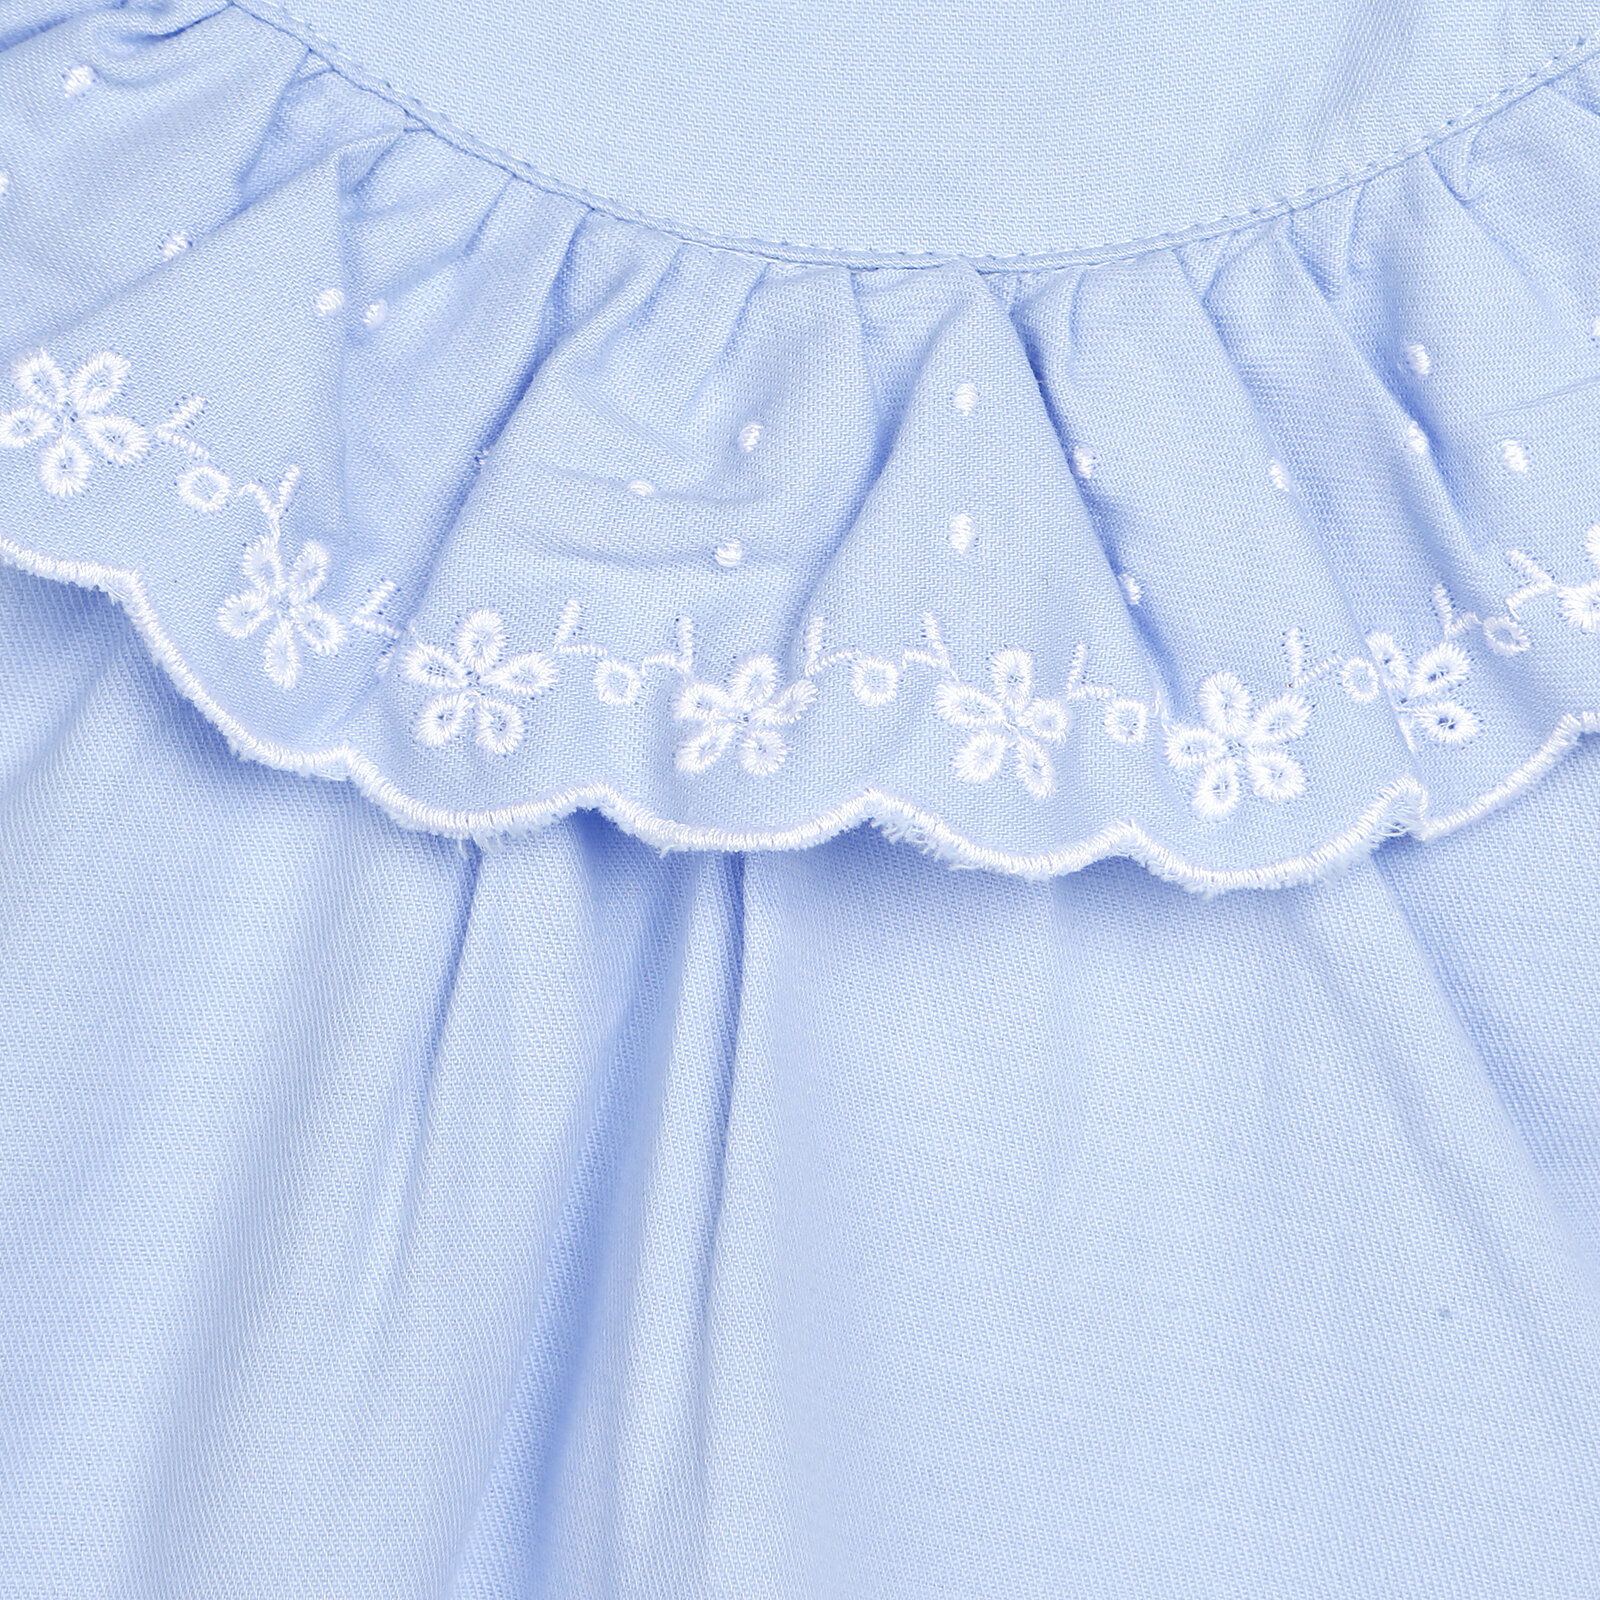 Brode Detaylı Kız Bebek İp Askılı Bluz - Tayt